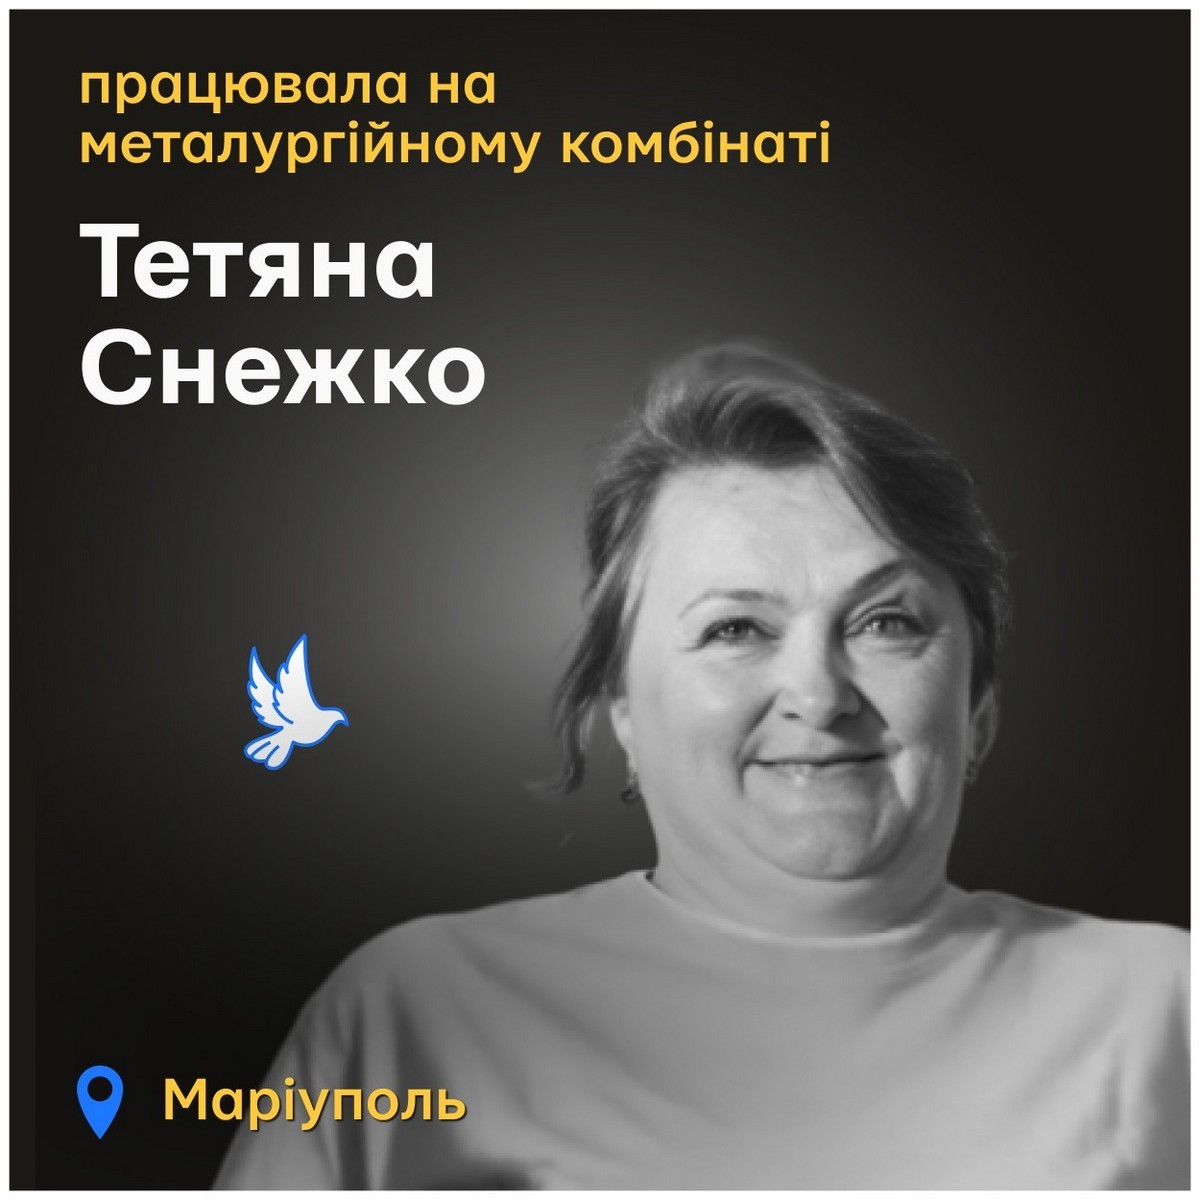 Меморіал: вбиті росією. Тетяна Снежко, 63 роки, Маріуполь, березень